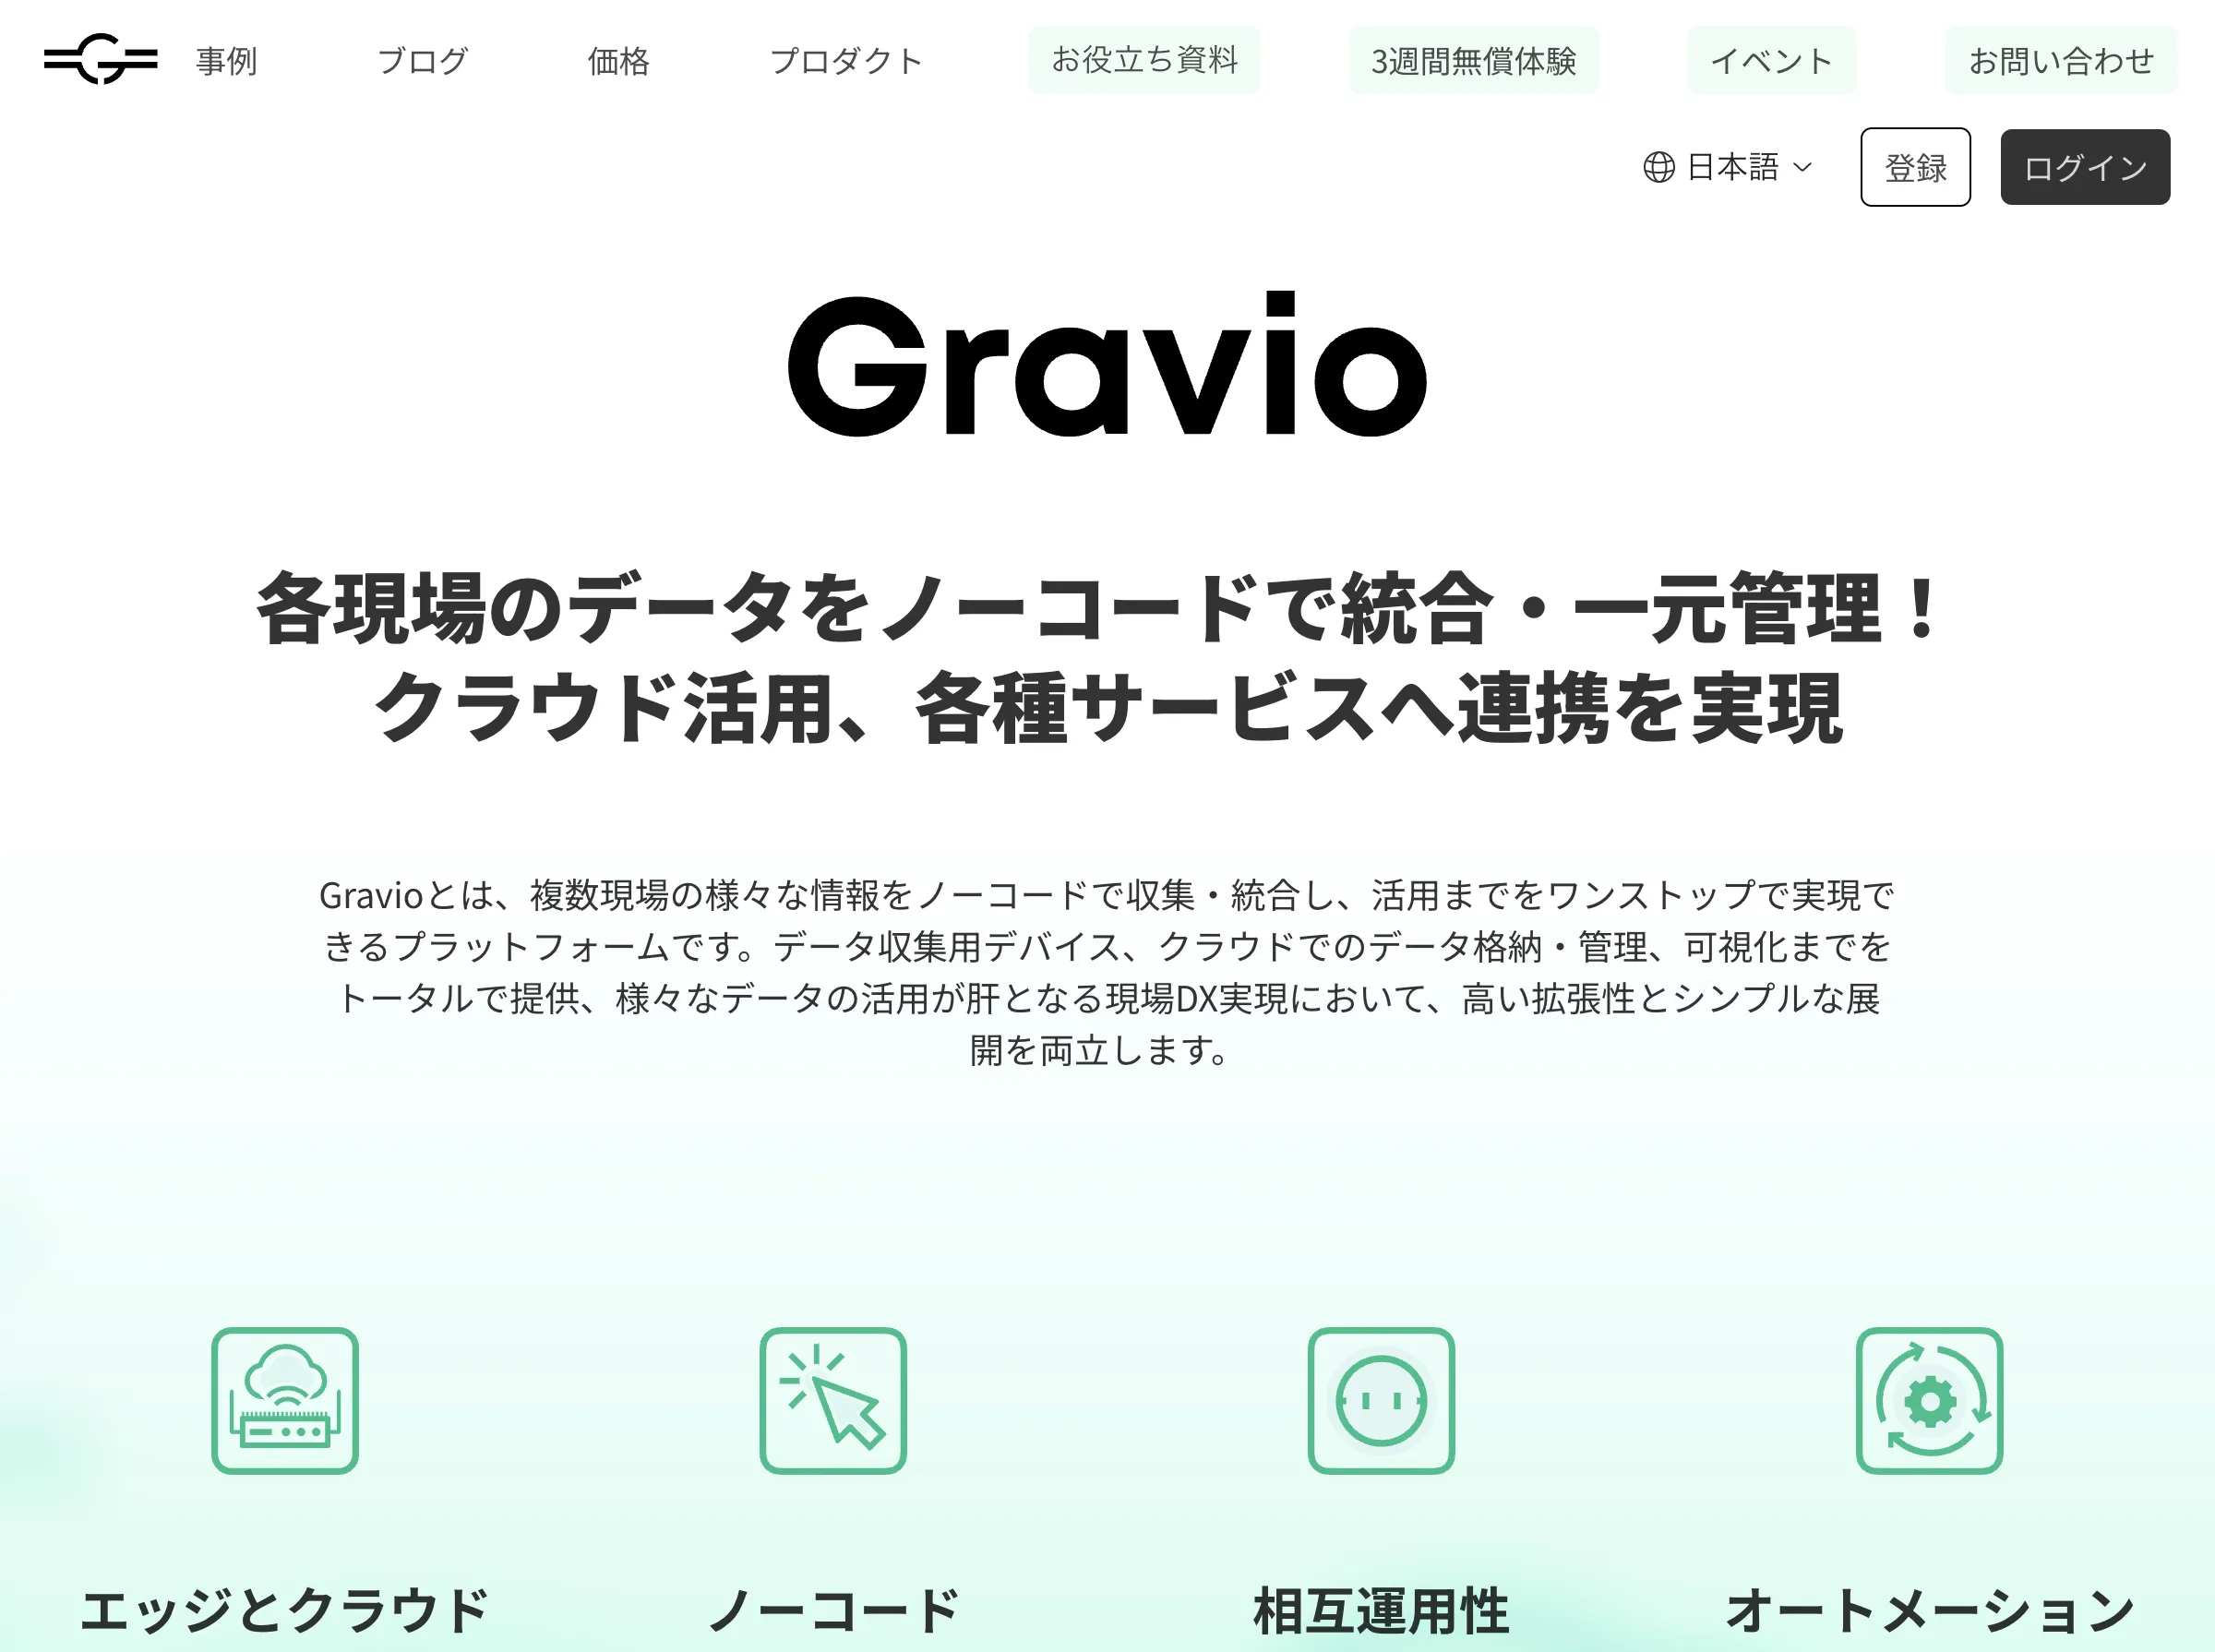 新Gravio(アステリア株式会社)